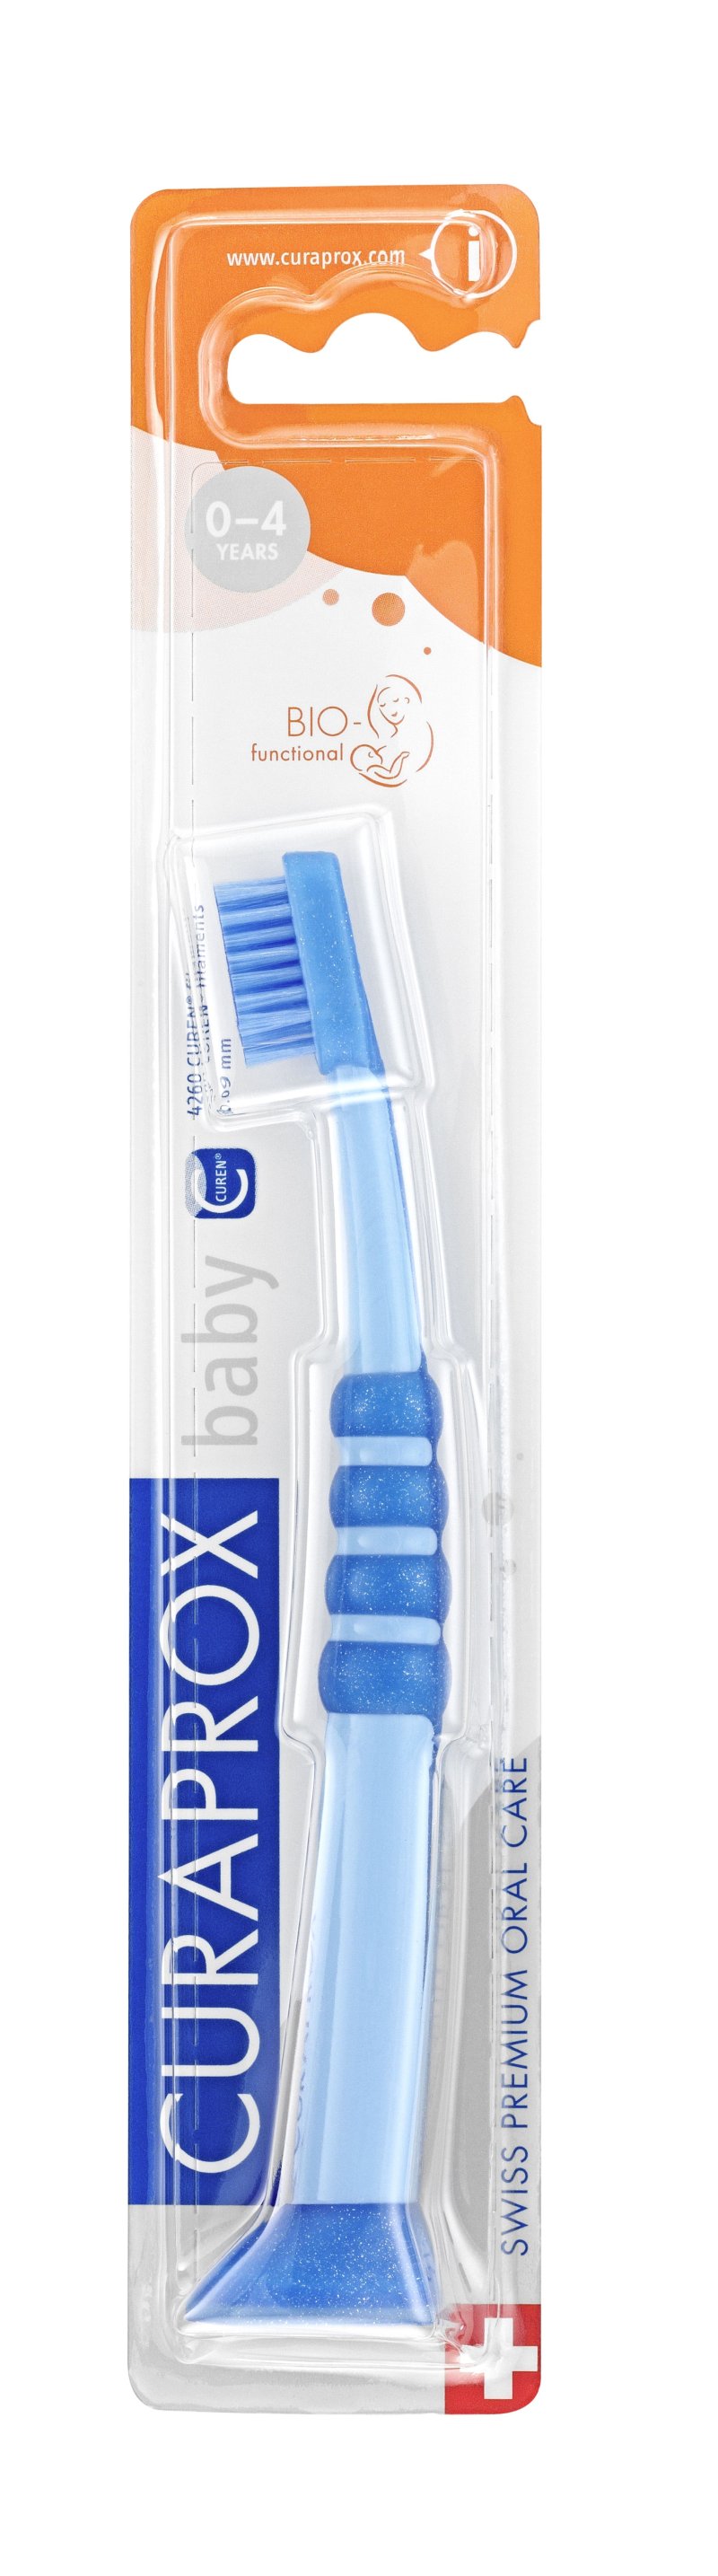 Curaprox Детская зубная щетка 'Куракид' от 0 до 4 лет, с гумированной ручкой (Curaprox, Детская продукция)